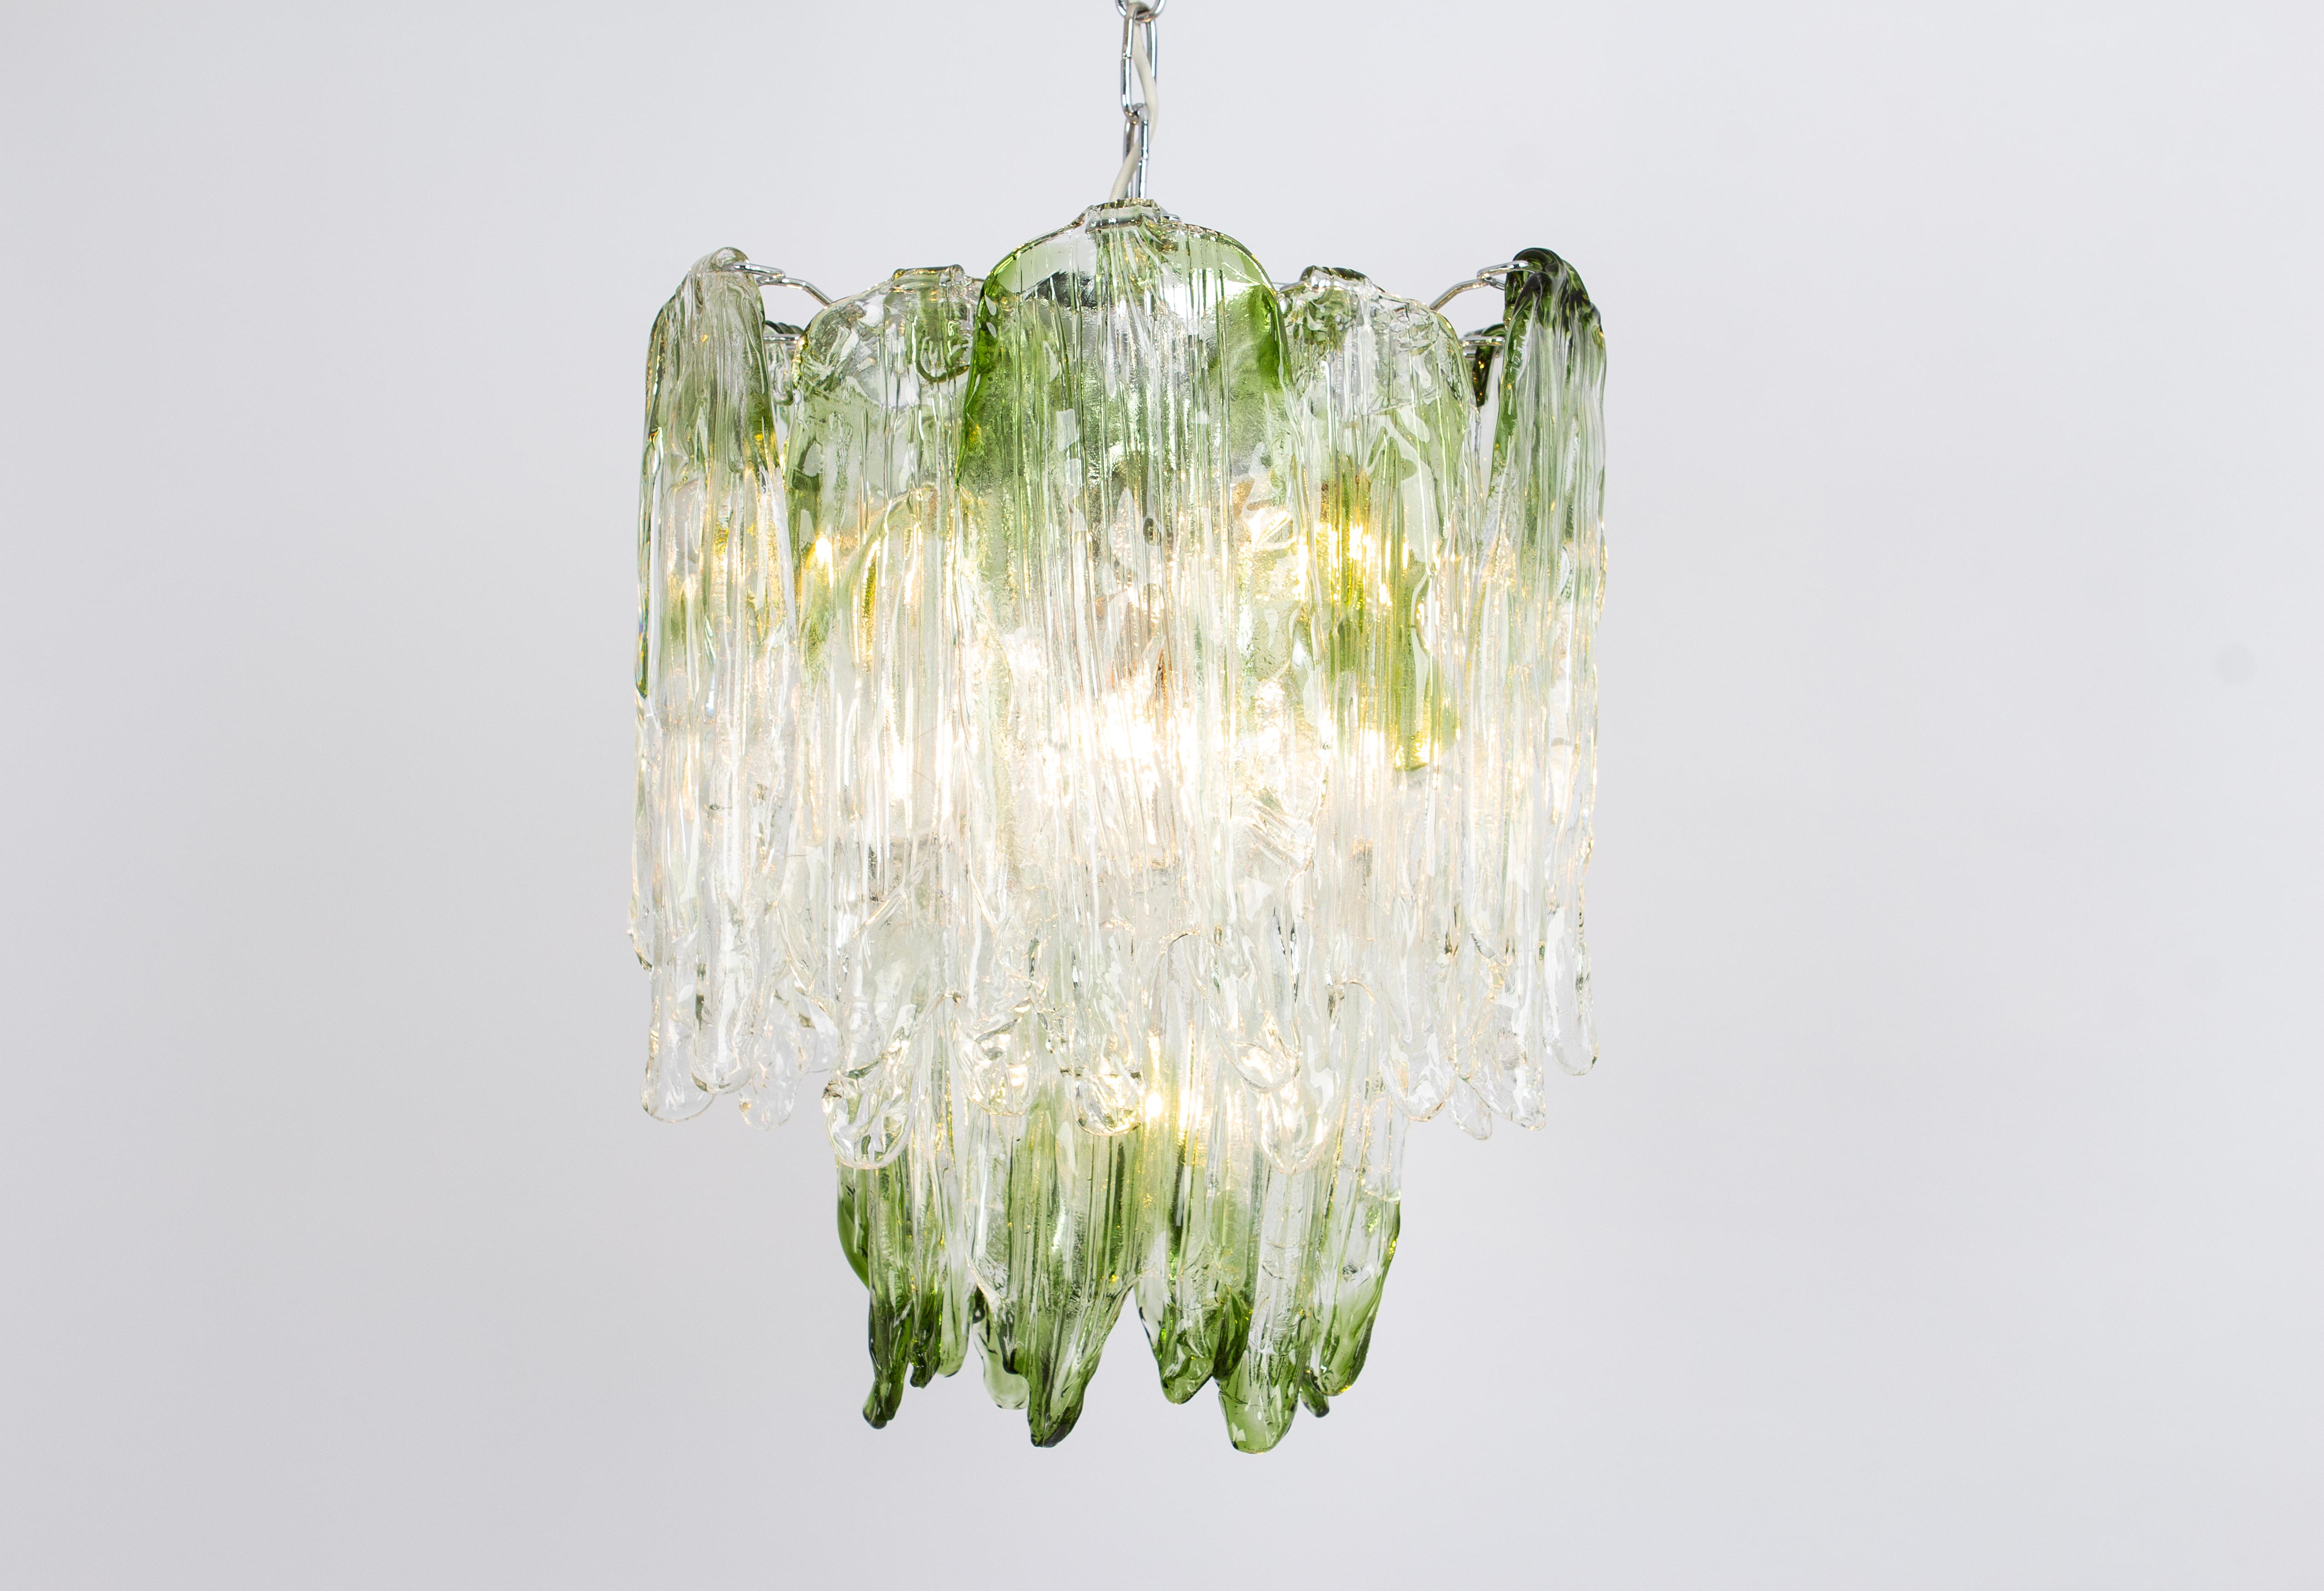 Merveilleuse suspension florale en verre clair structuré de Murano avec des inclusions vertes formant des pétales de verre, soutenue par une monture en métal. Fabriqué par Mazzega, Italie, dans les années 1970.

De grande qualité et en très bon